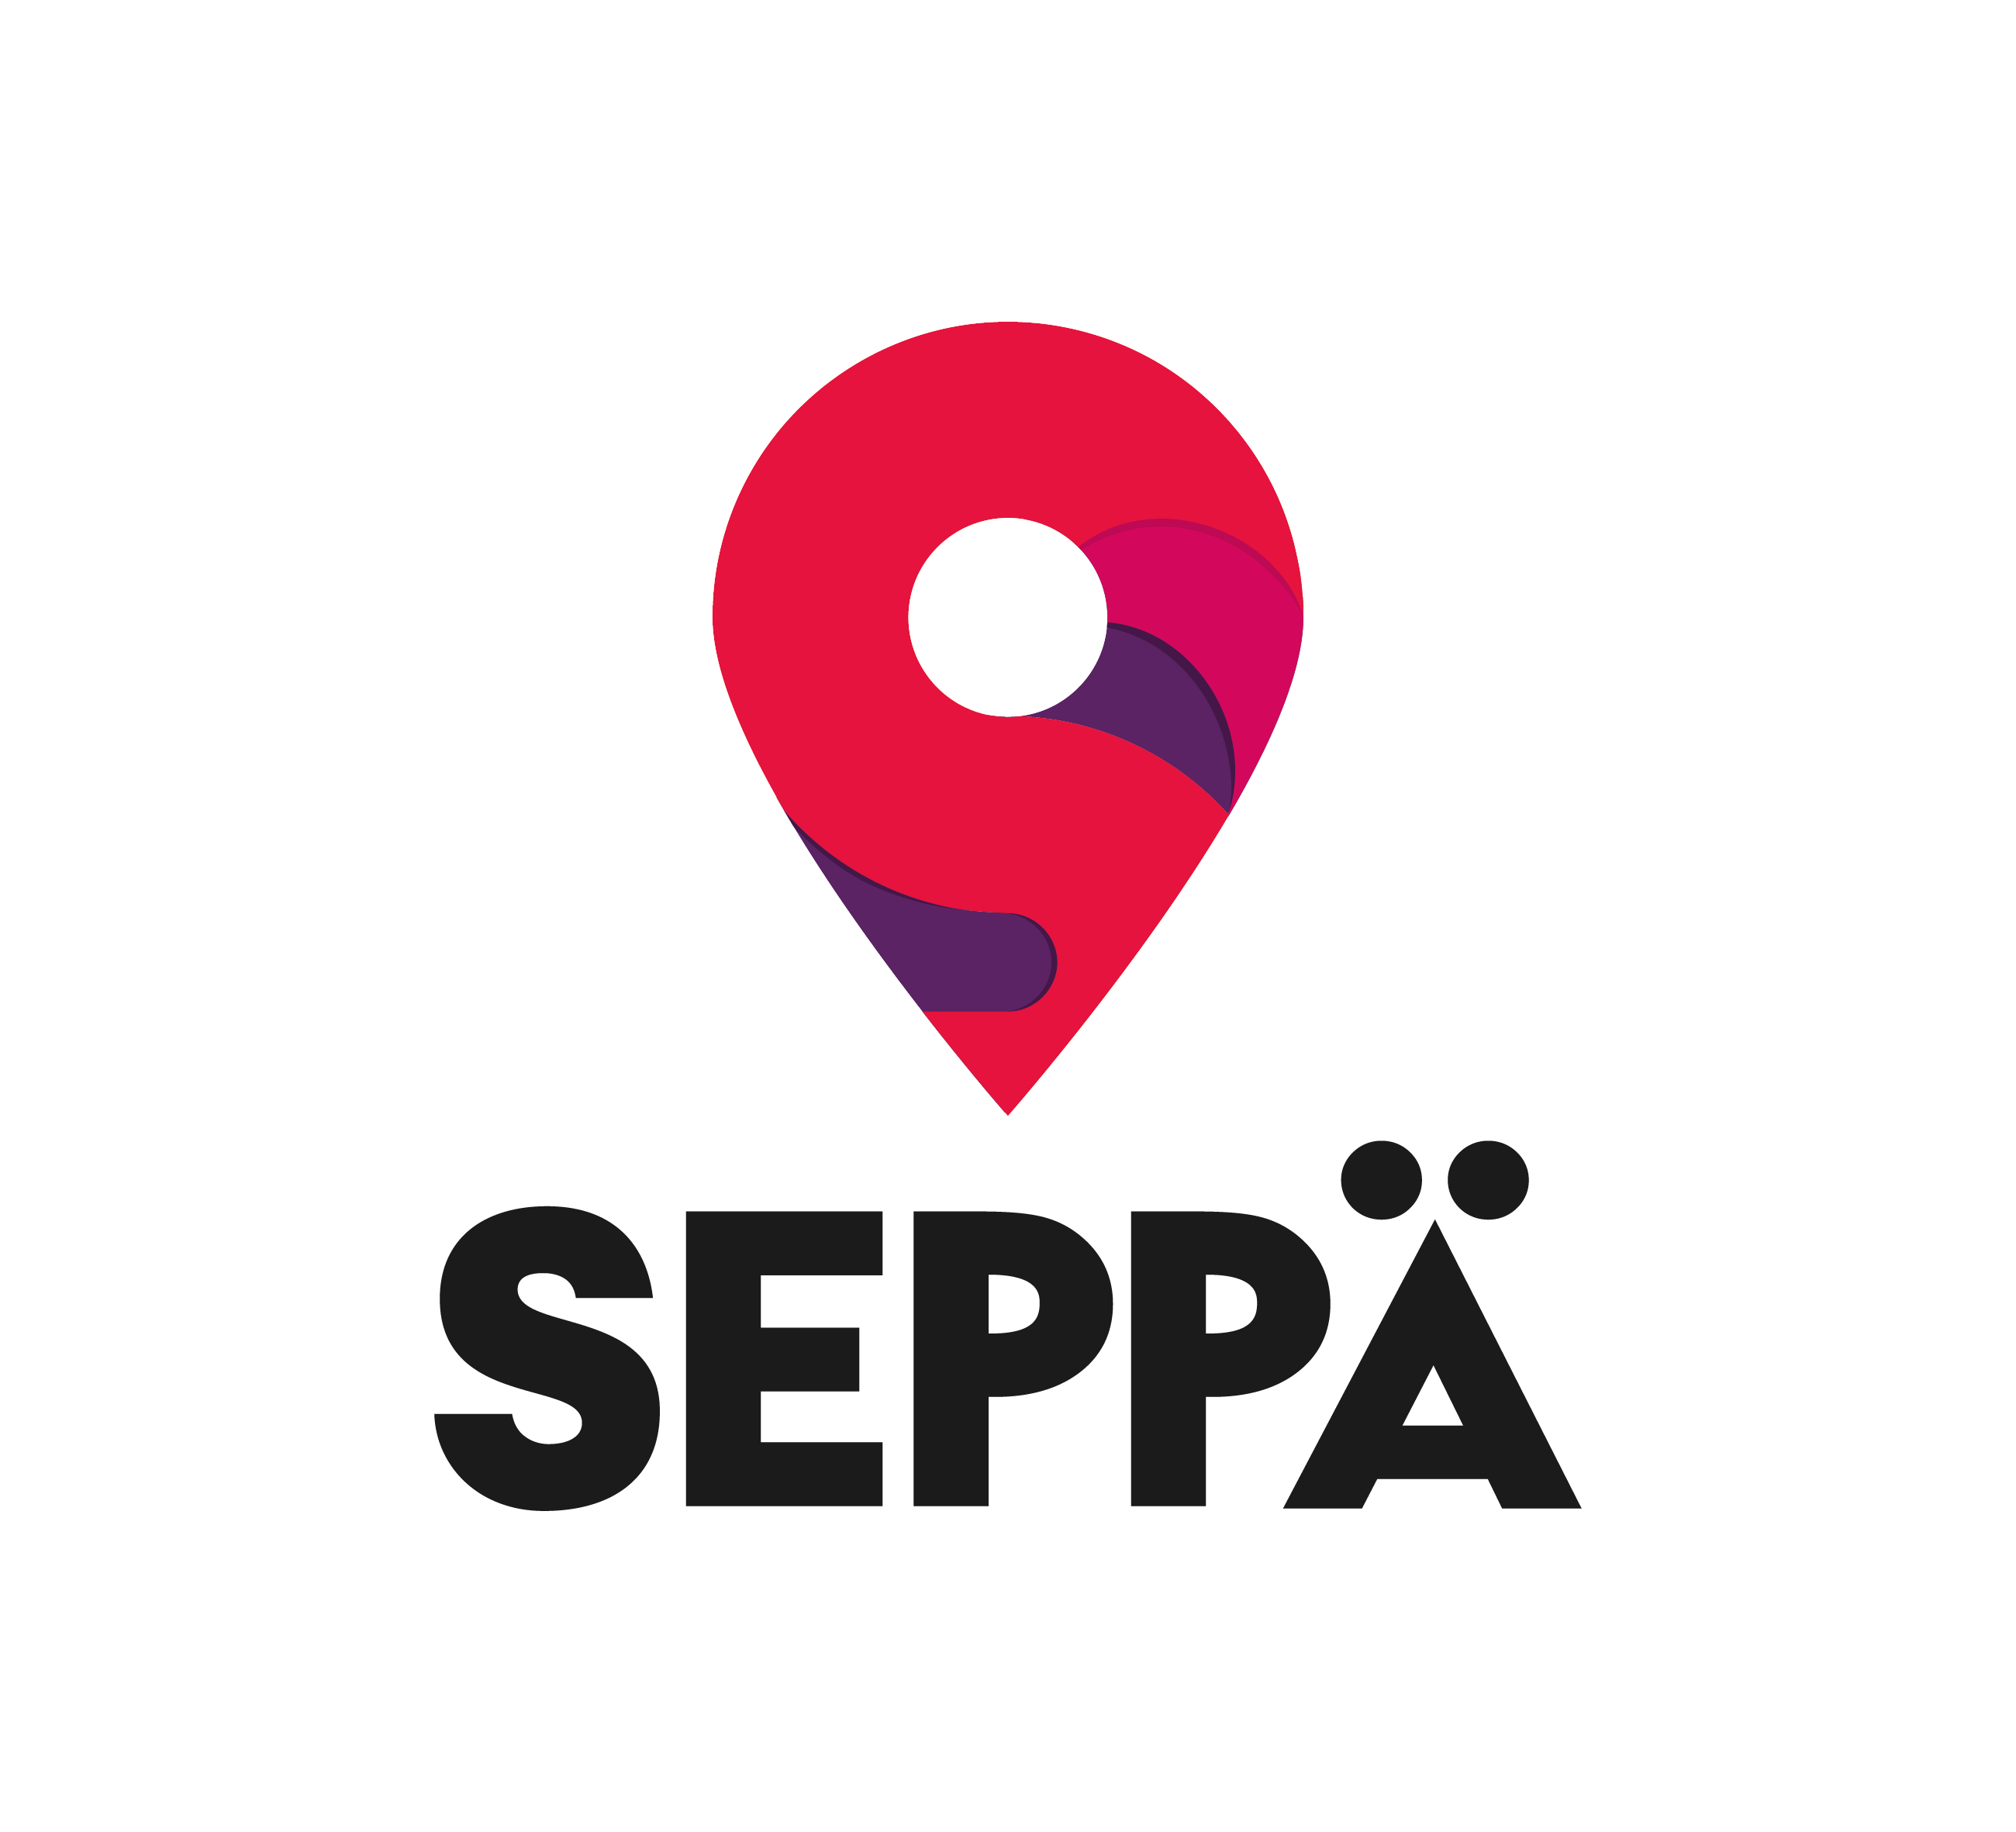 Kauppakeskus-Seppa-logo-2017-pysty-valkonen-reuna-ja-musta-teksti